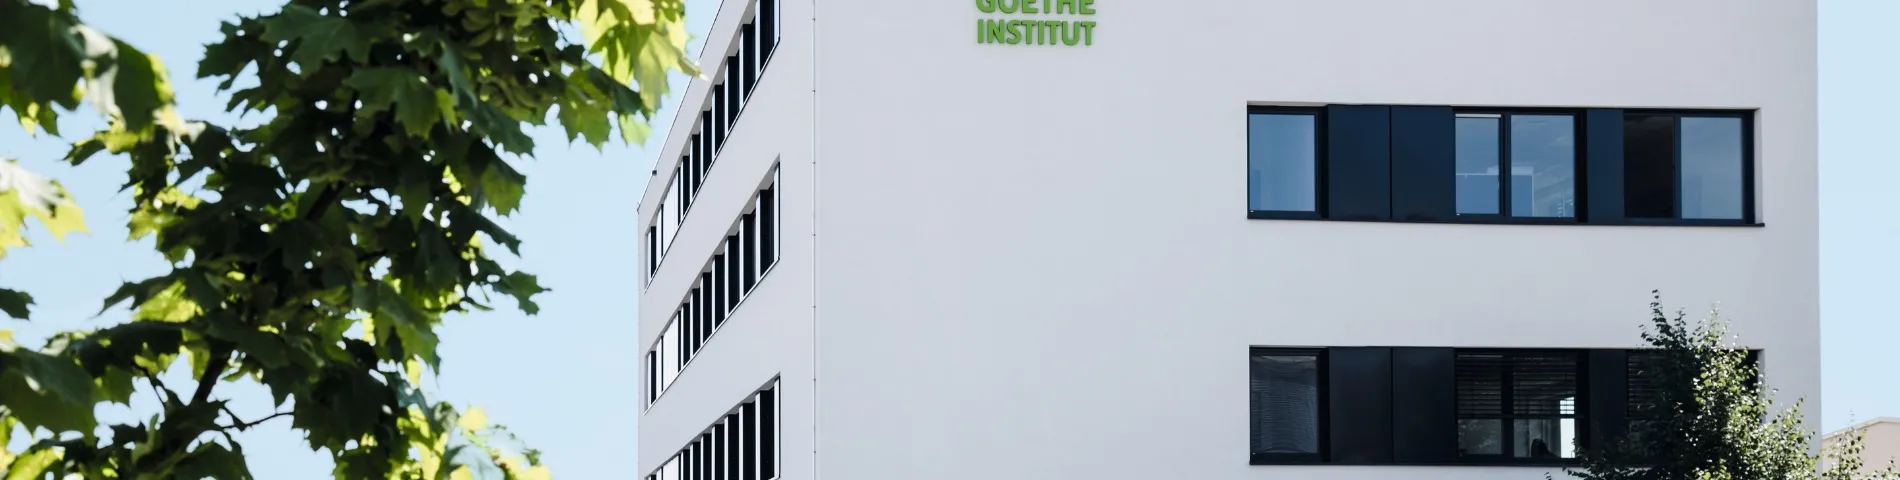 Goethe-Institut kuva 1